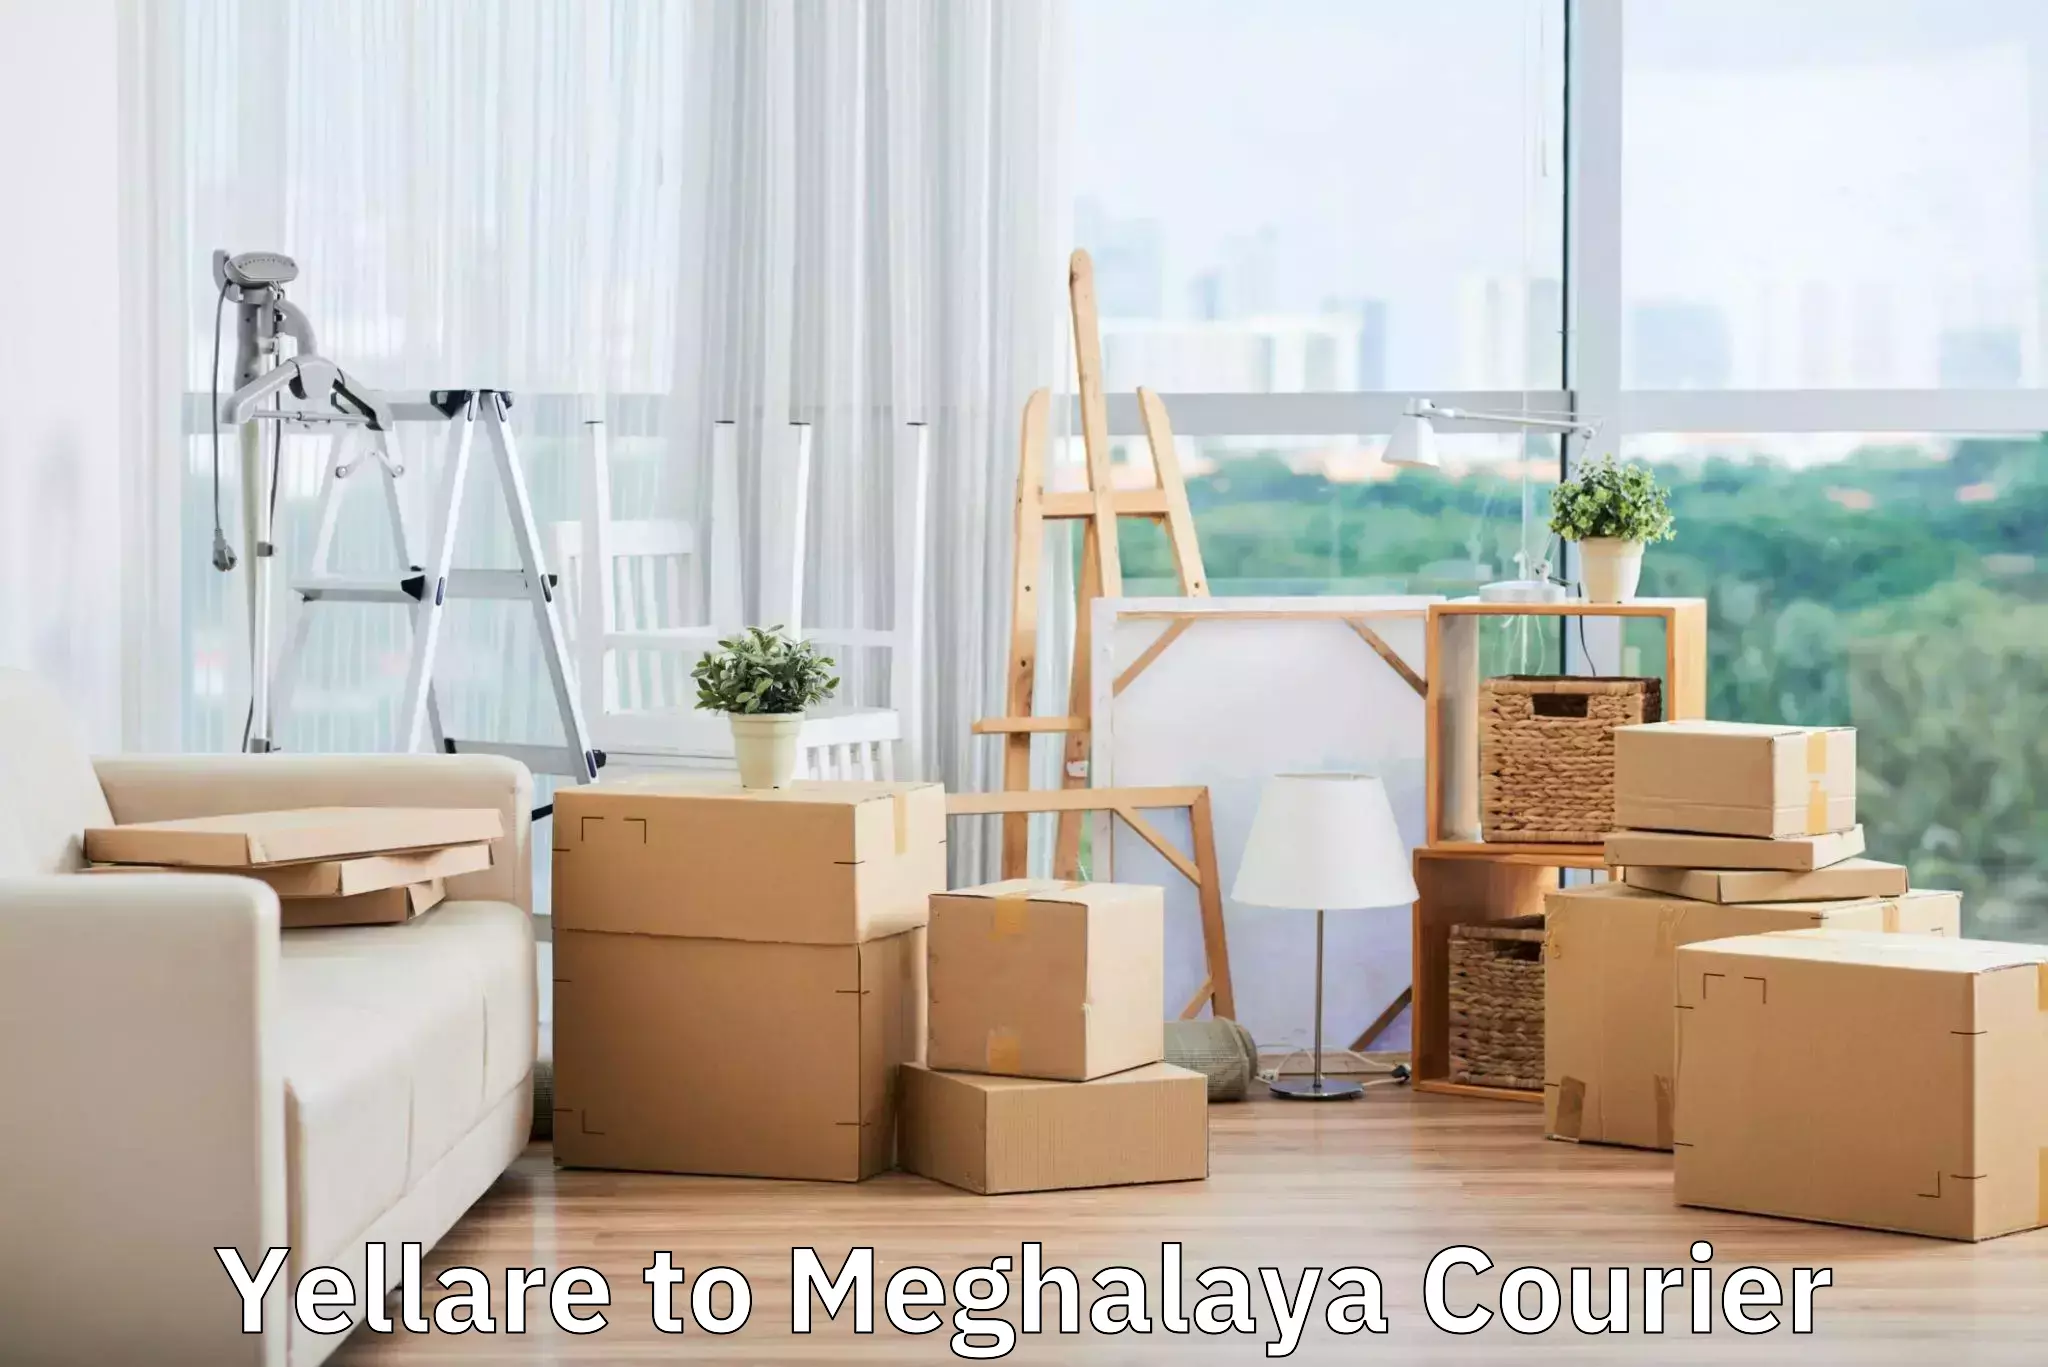 Luggage delivery news Yellare to Meghalaya